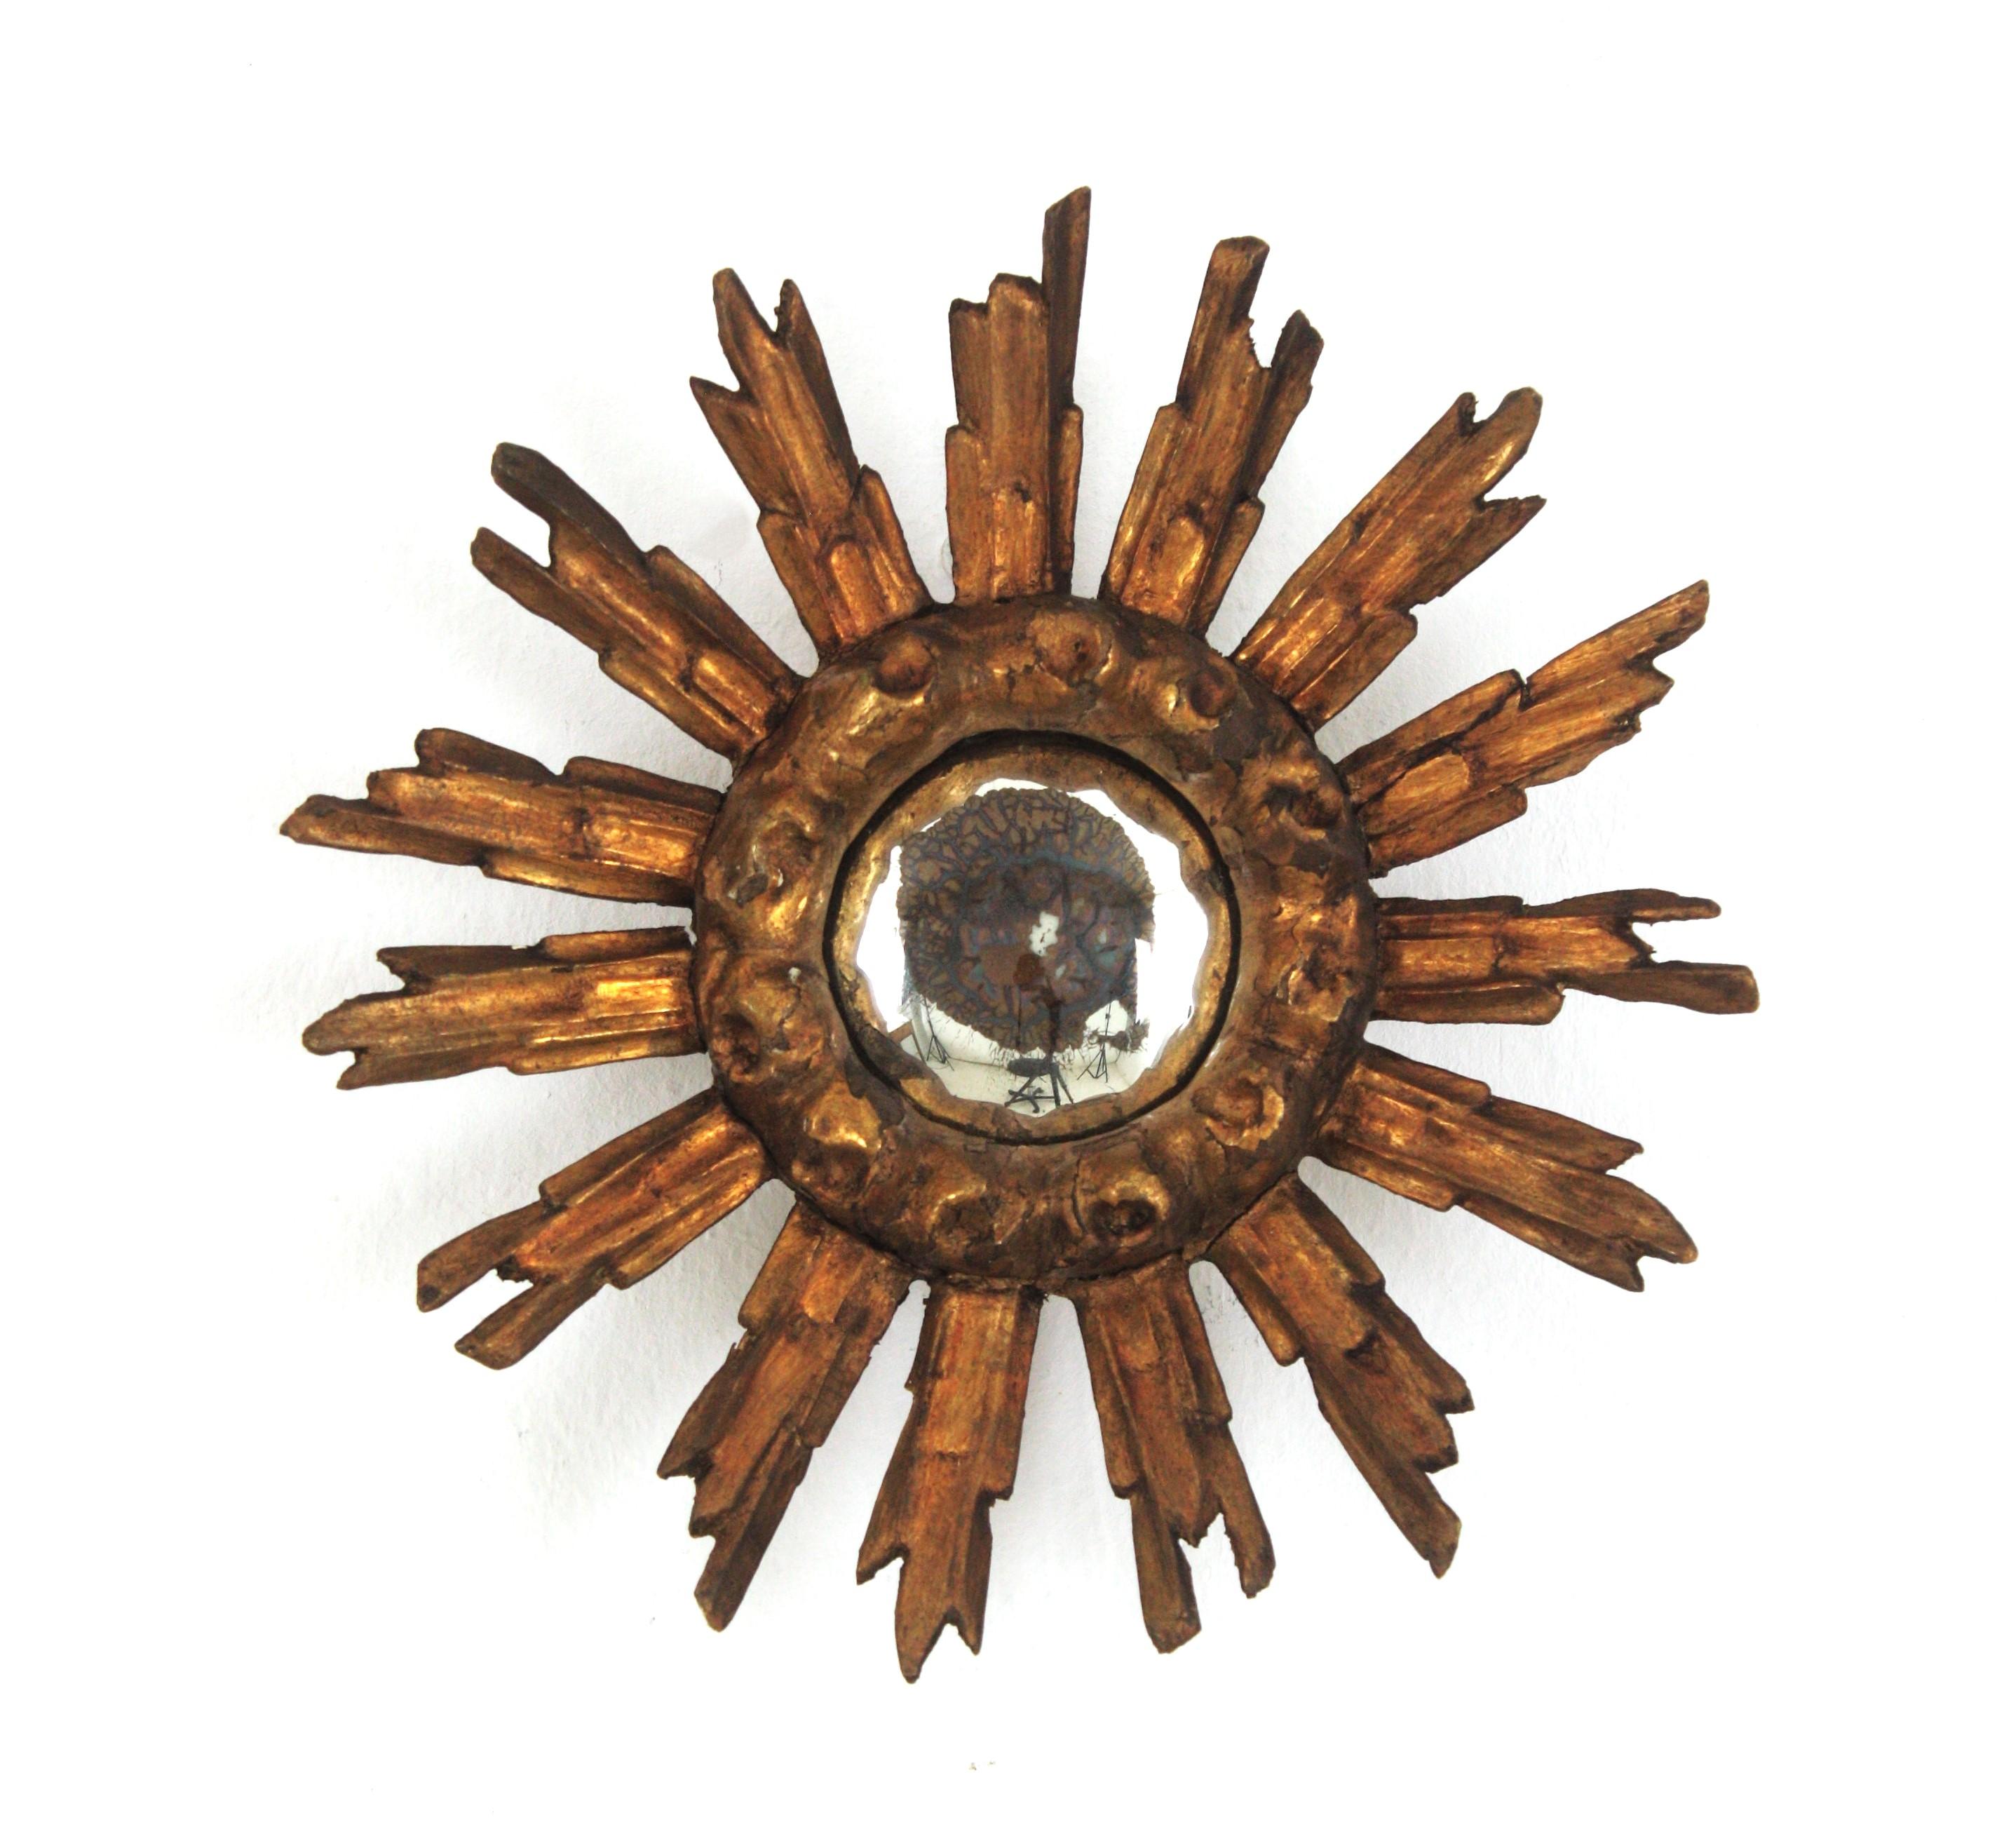 Kleiner, konvexer Sonnenschliff-Spiegel aus Giltwood
Fein geschnitzter, blattvergoldeter, konvexer Sonnenschliffspiegel in ungewöhnlicher Minigröße. Spanien, 1930er-1940er Jahre.
Dieser wunderschöne Miniaturspiegel mit Sonnenschliff hat einen Rahmen